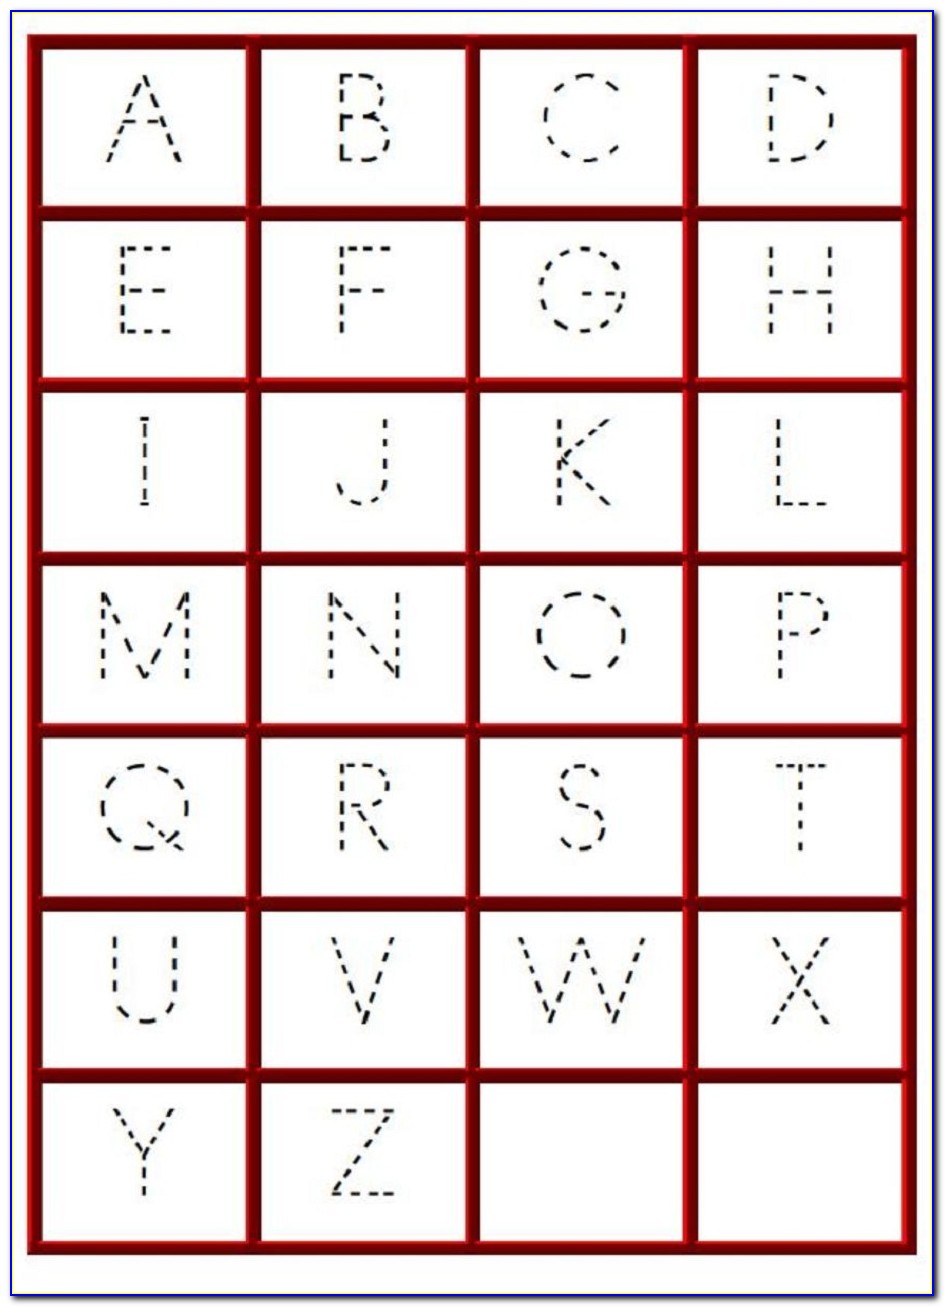 Kindergarten Worksheets Letter C